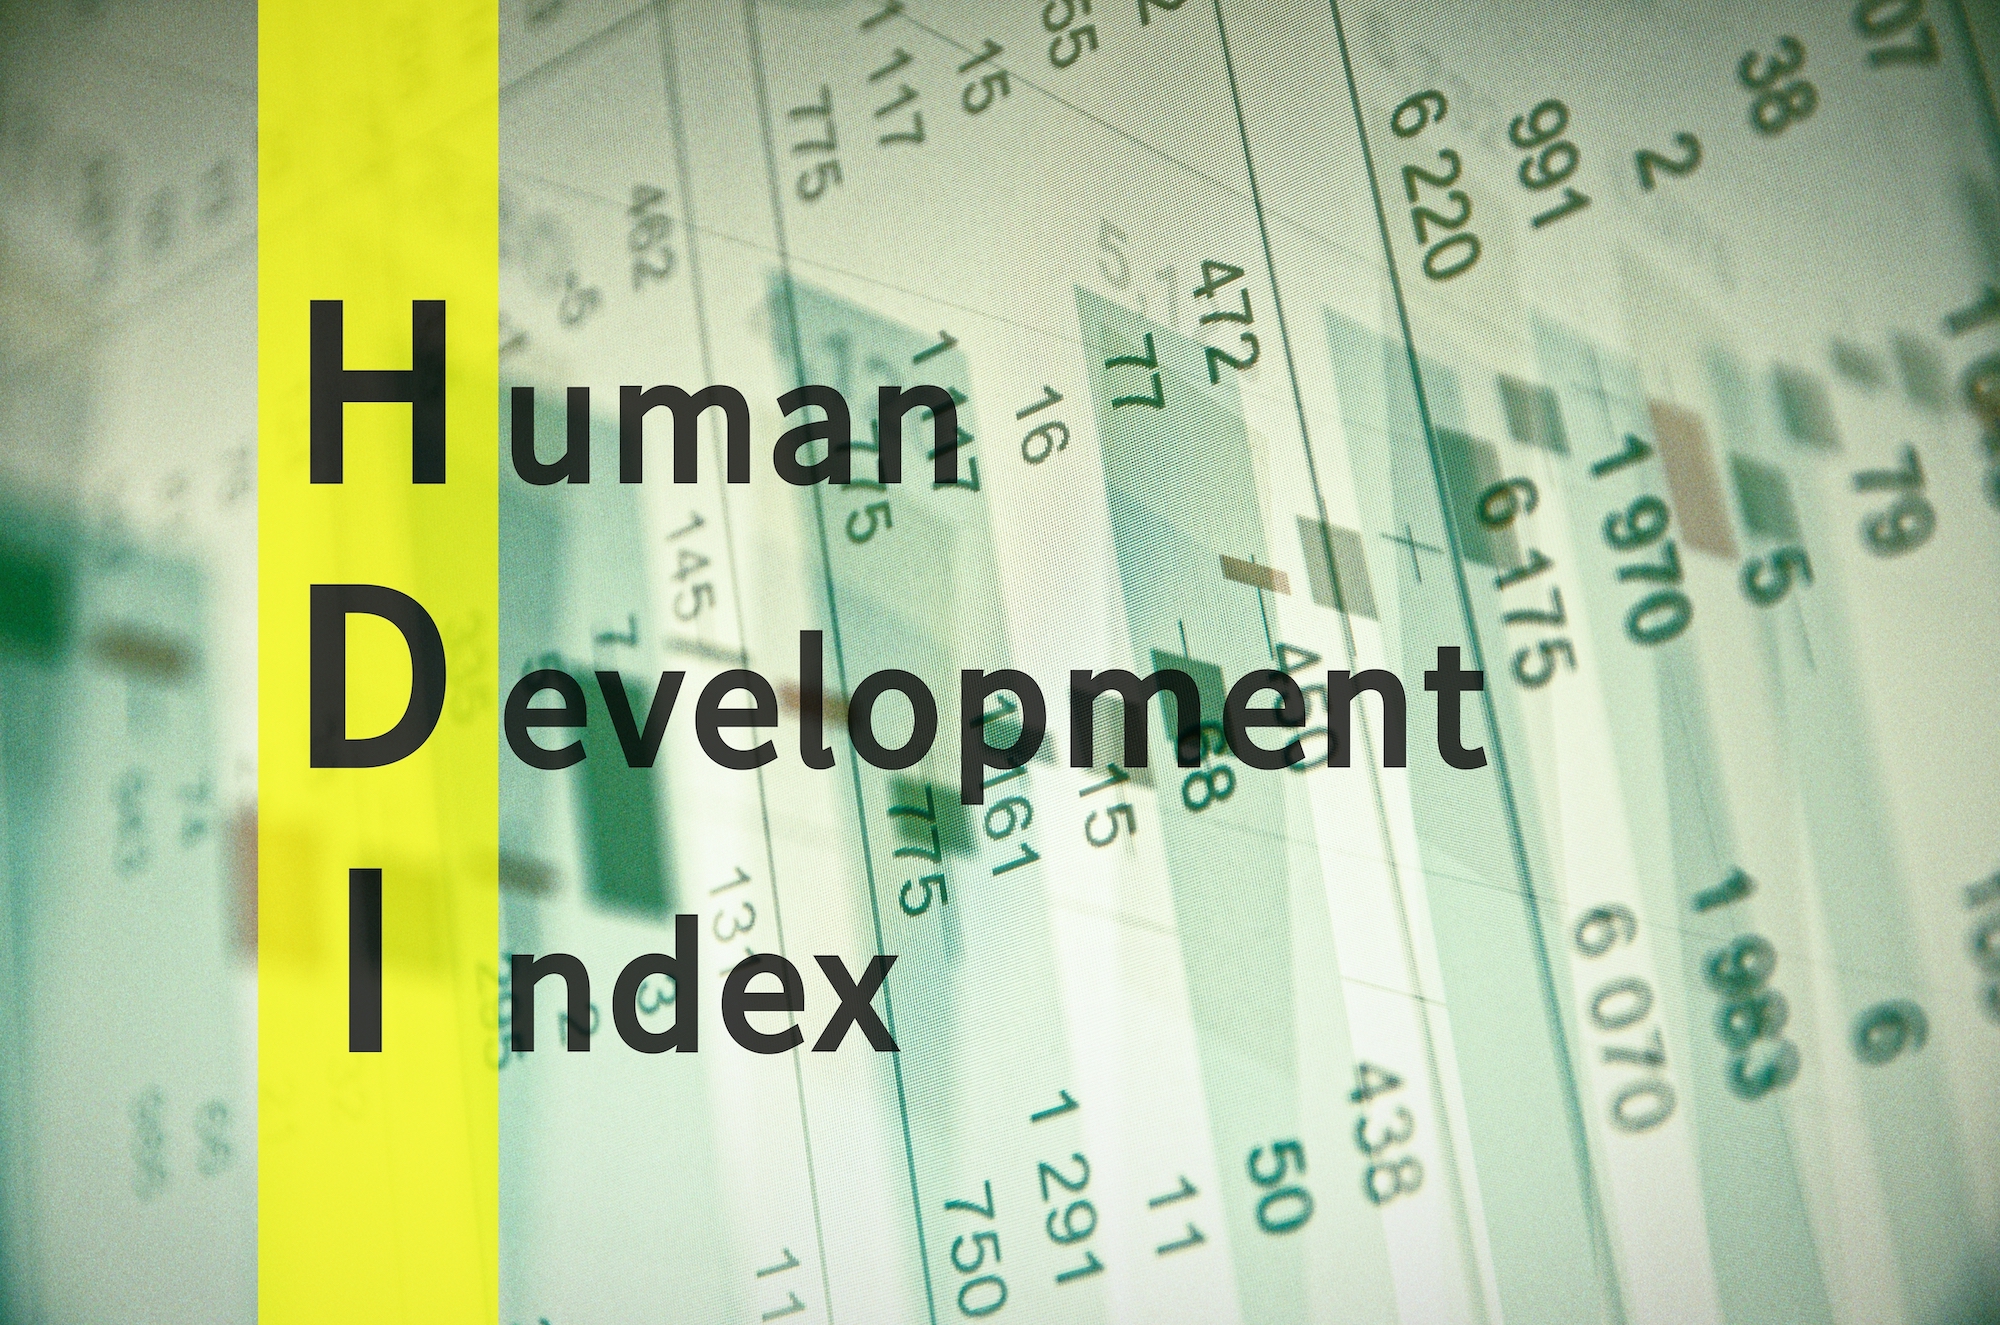 Human index. Human Development Index. HDI. Human Development Index 2022. Human Development Index, 2020-2022.